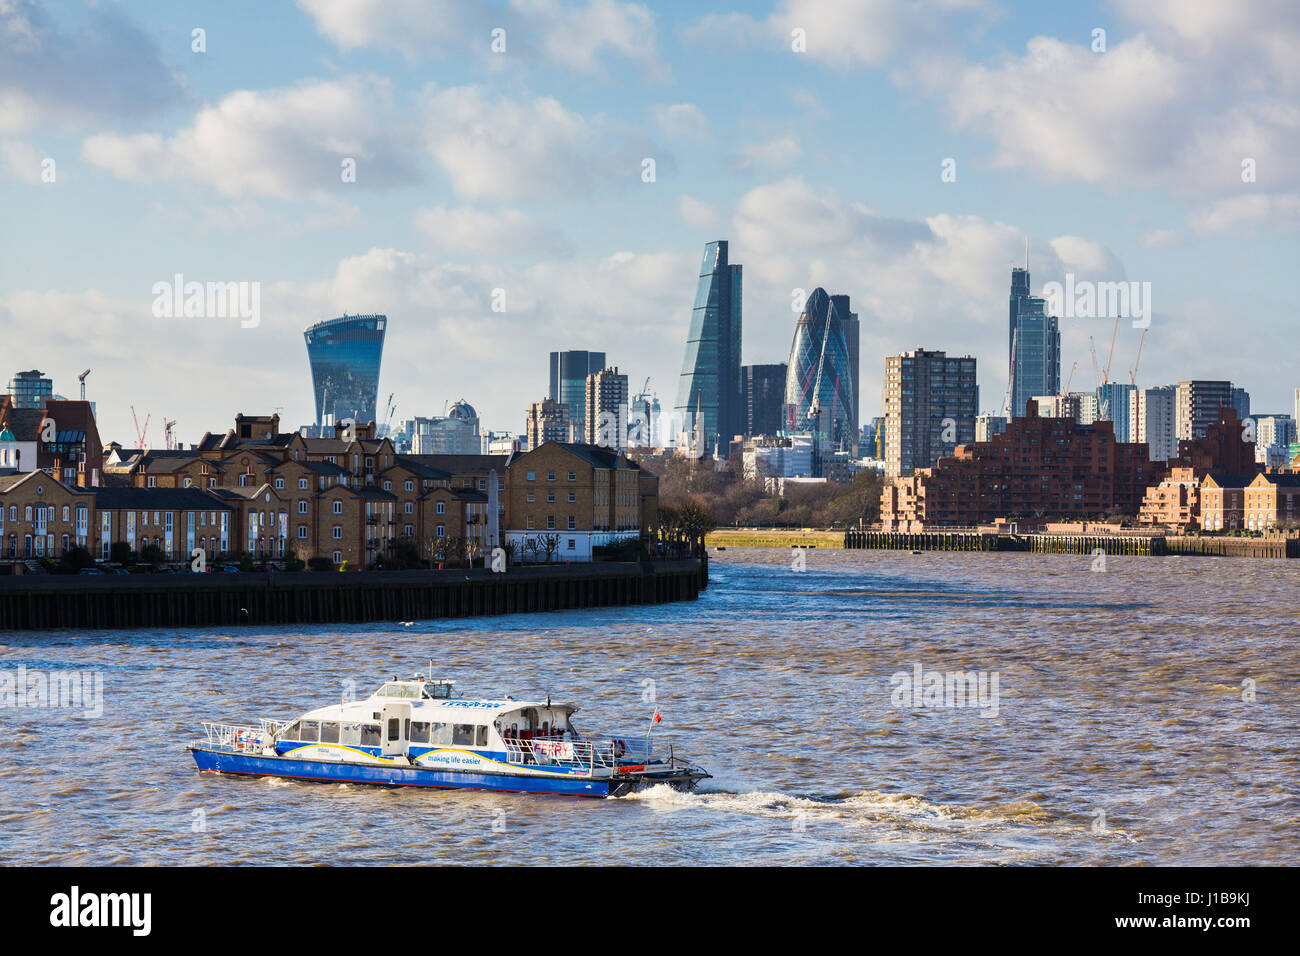 Ville de London Skyline avec Thames Clipper ferry boat de Canary Wharf, les Docklands, London, UK Banque D'Images